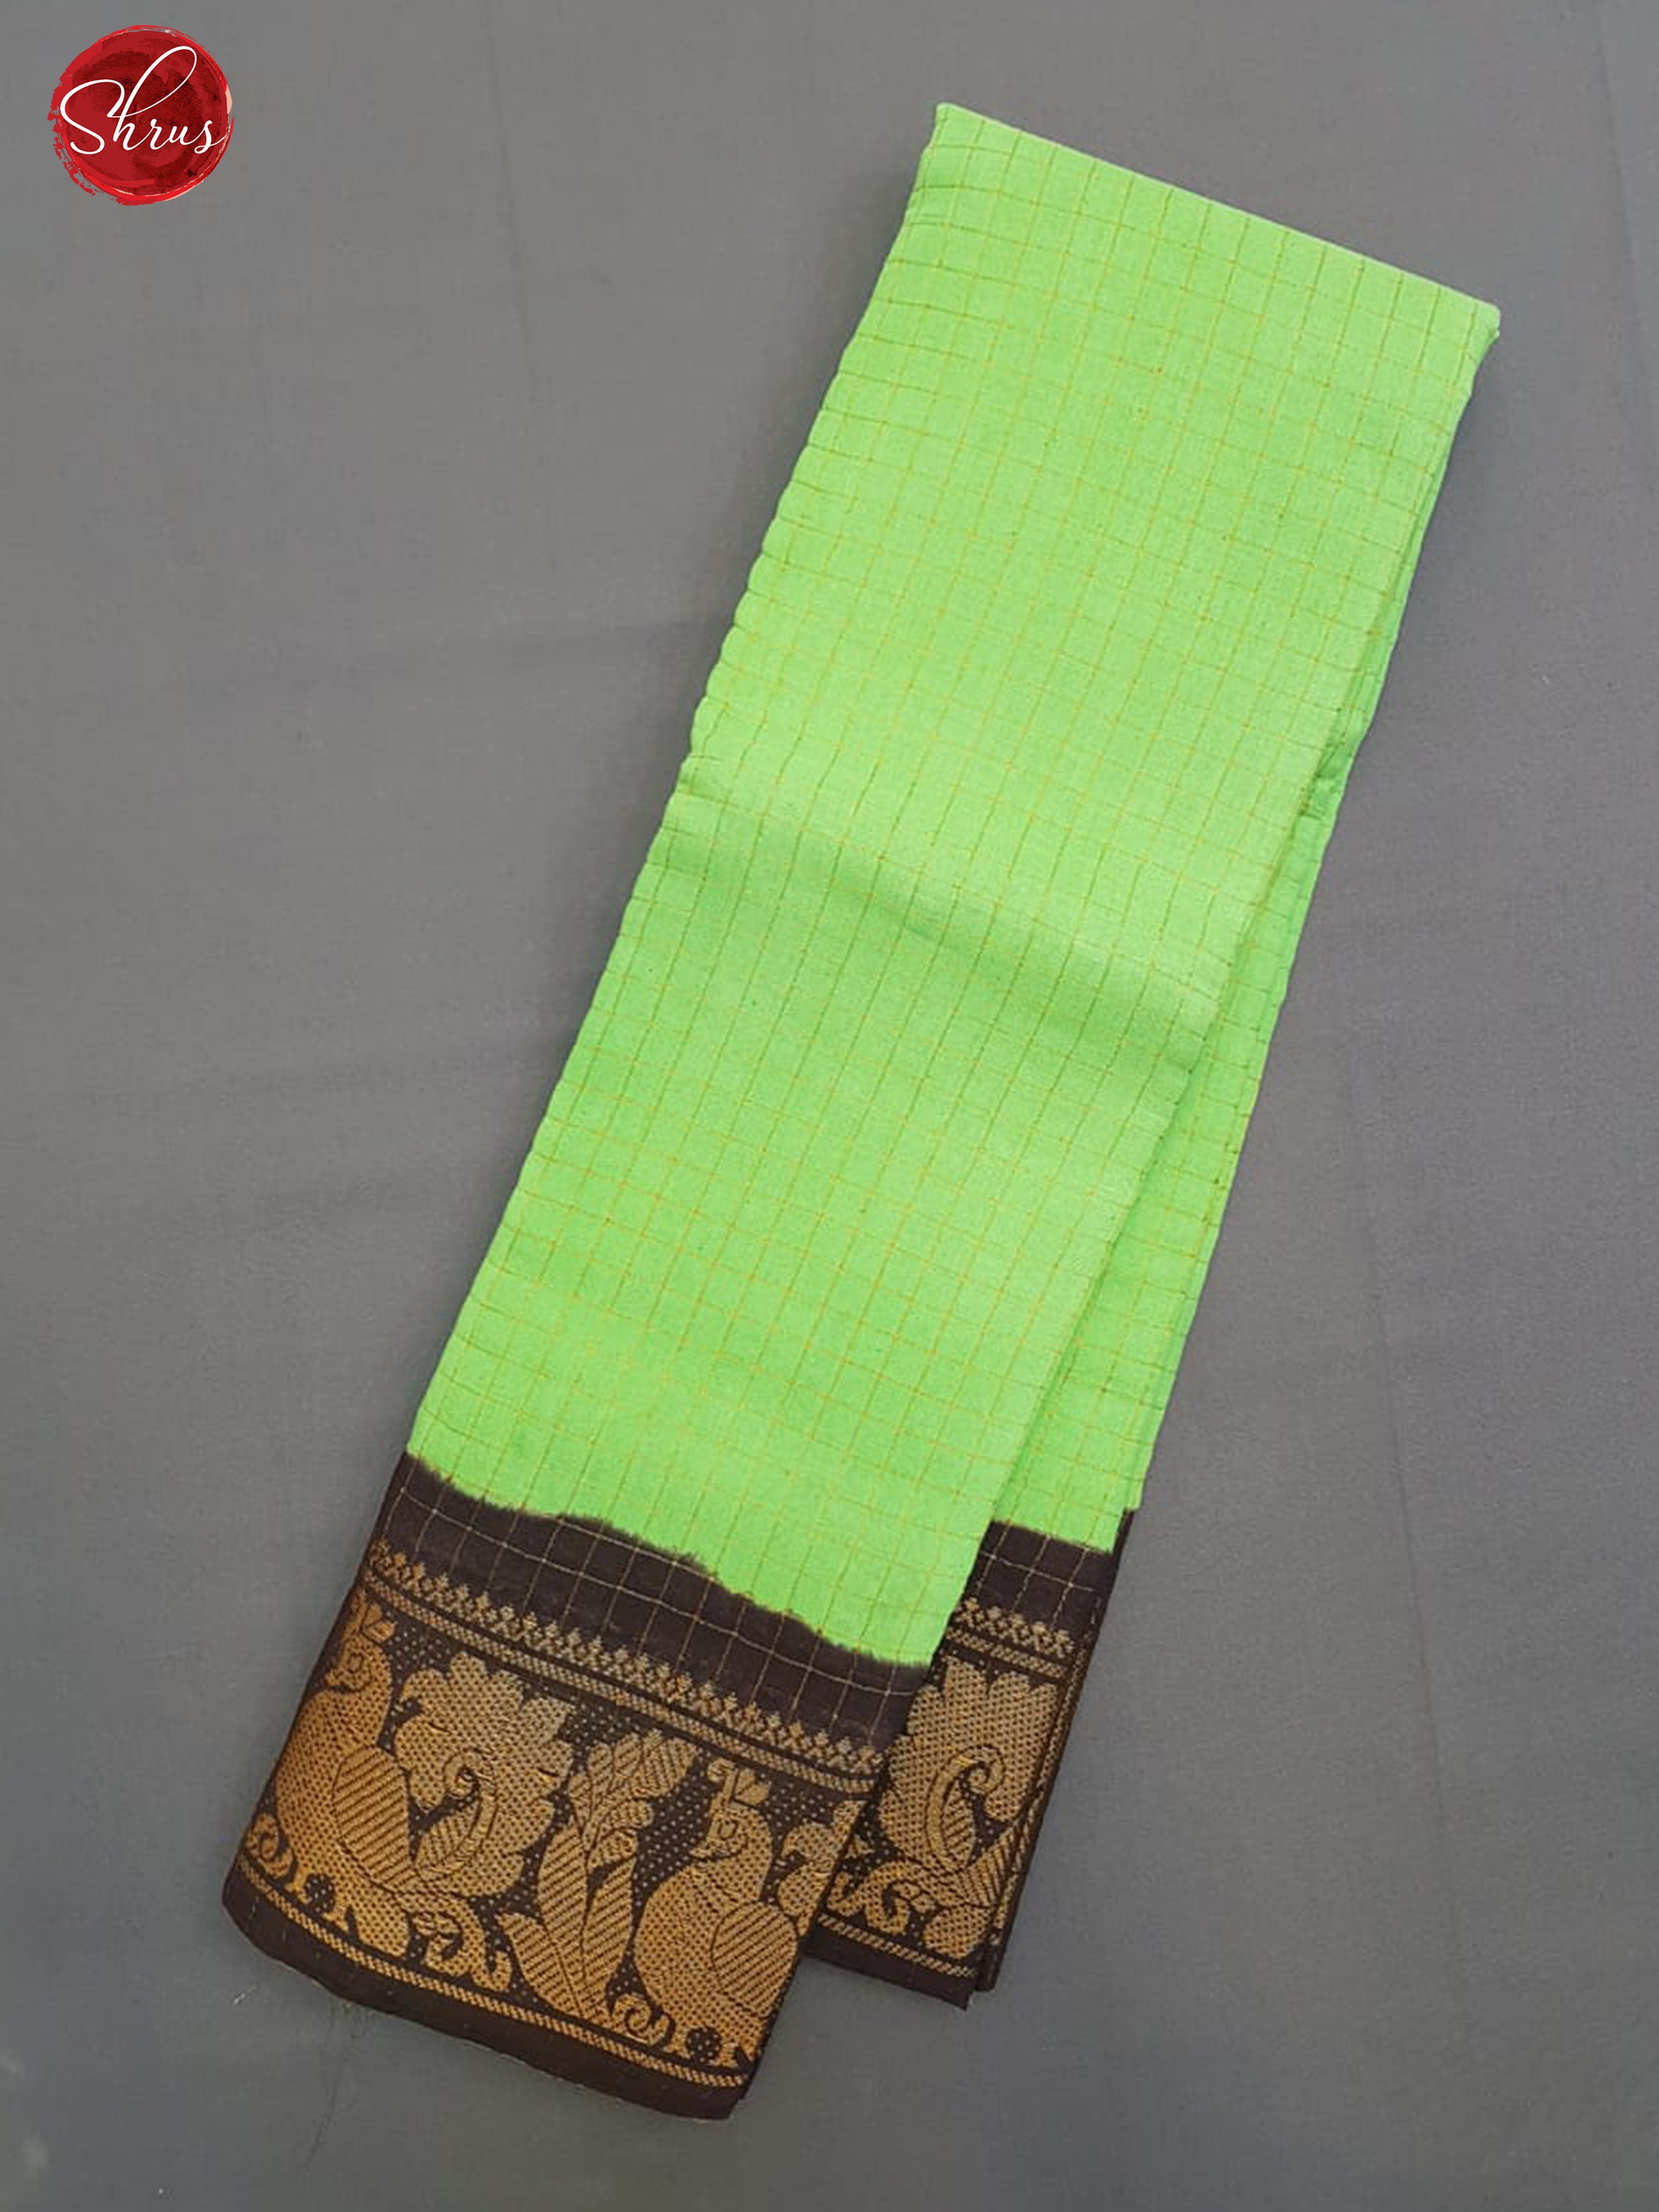 Pista Green & Brown - Sungudi Cotton with zari Checks on thebody & Contrast Zari Border - Shop on ShrusEternity.com